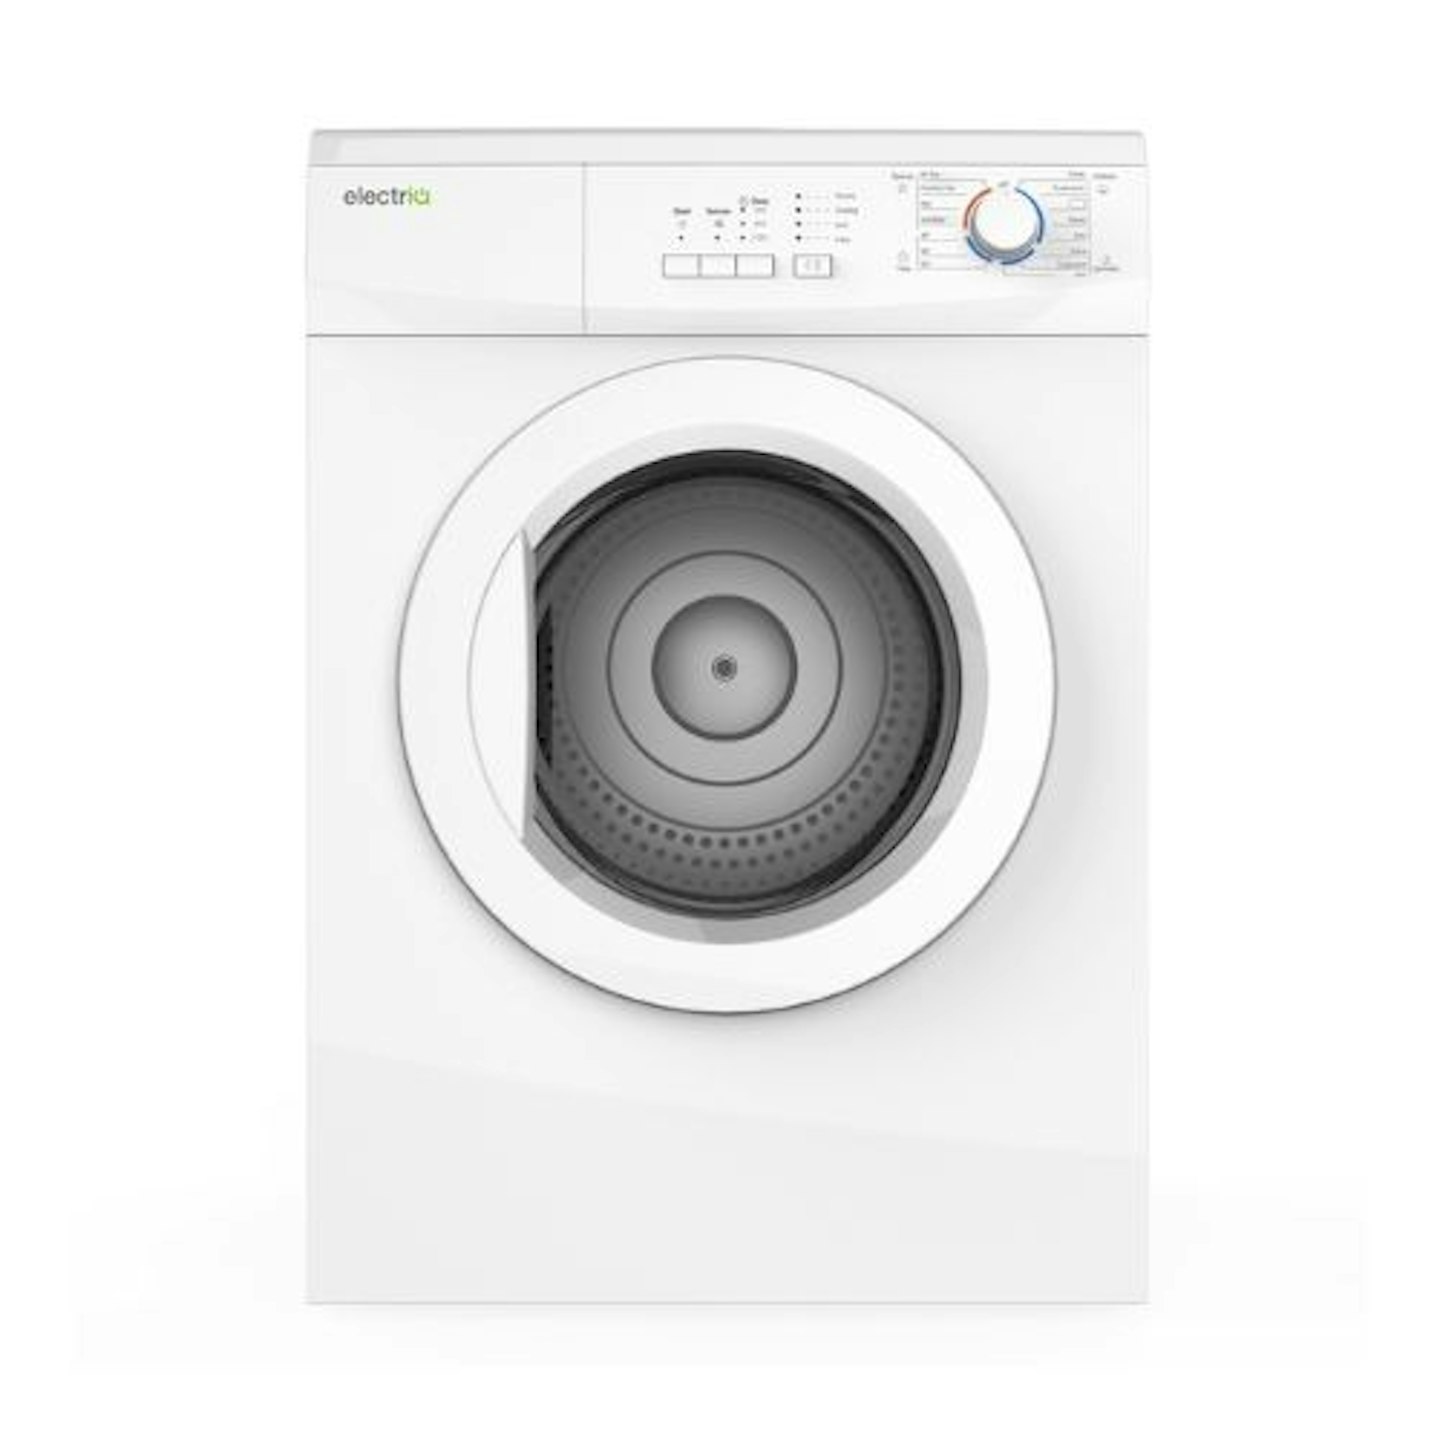 electriQ EIQFSTD7 Vented Dryer in White